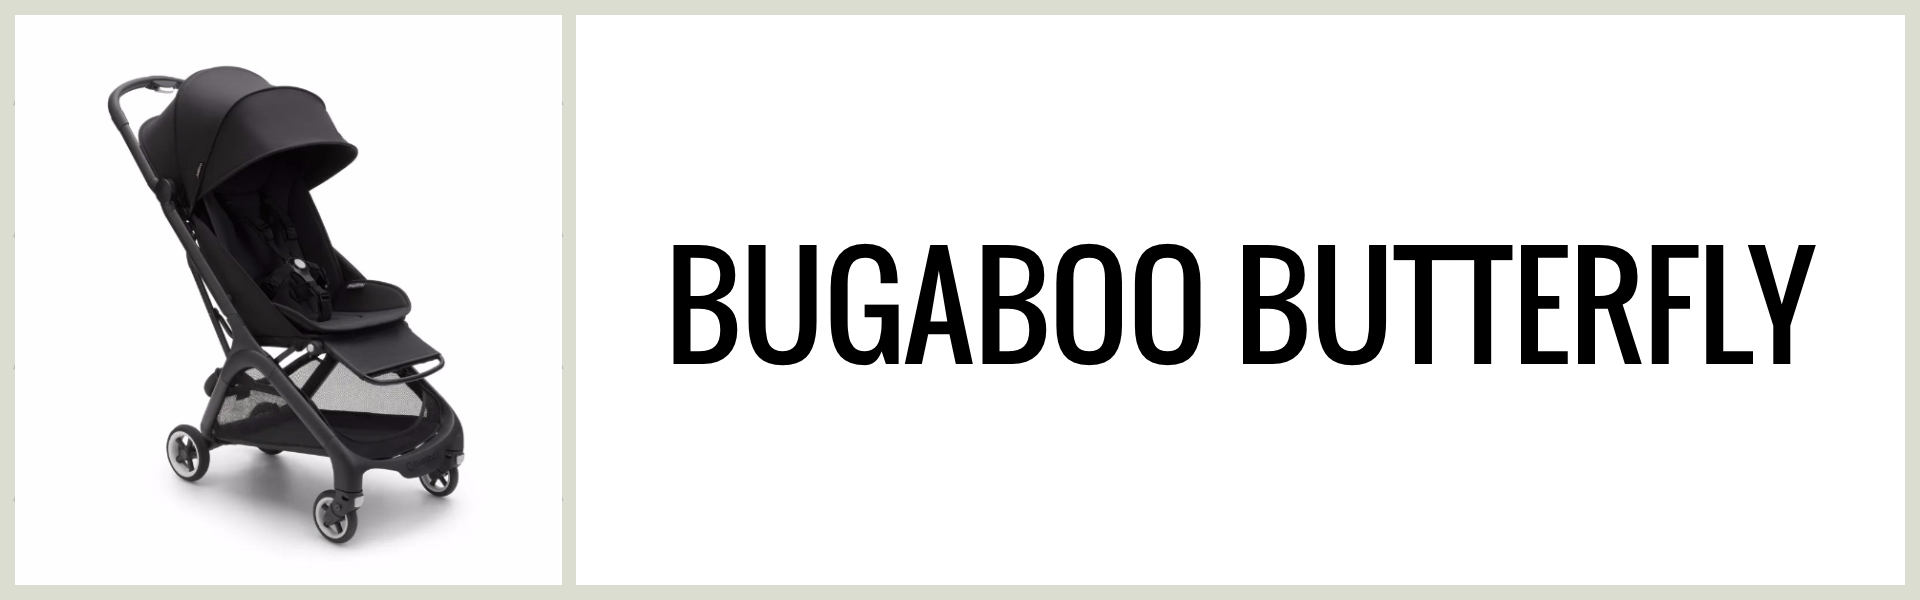 Omdöme: Hur är Bugaboo Butterfly som resevagn?